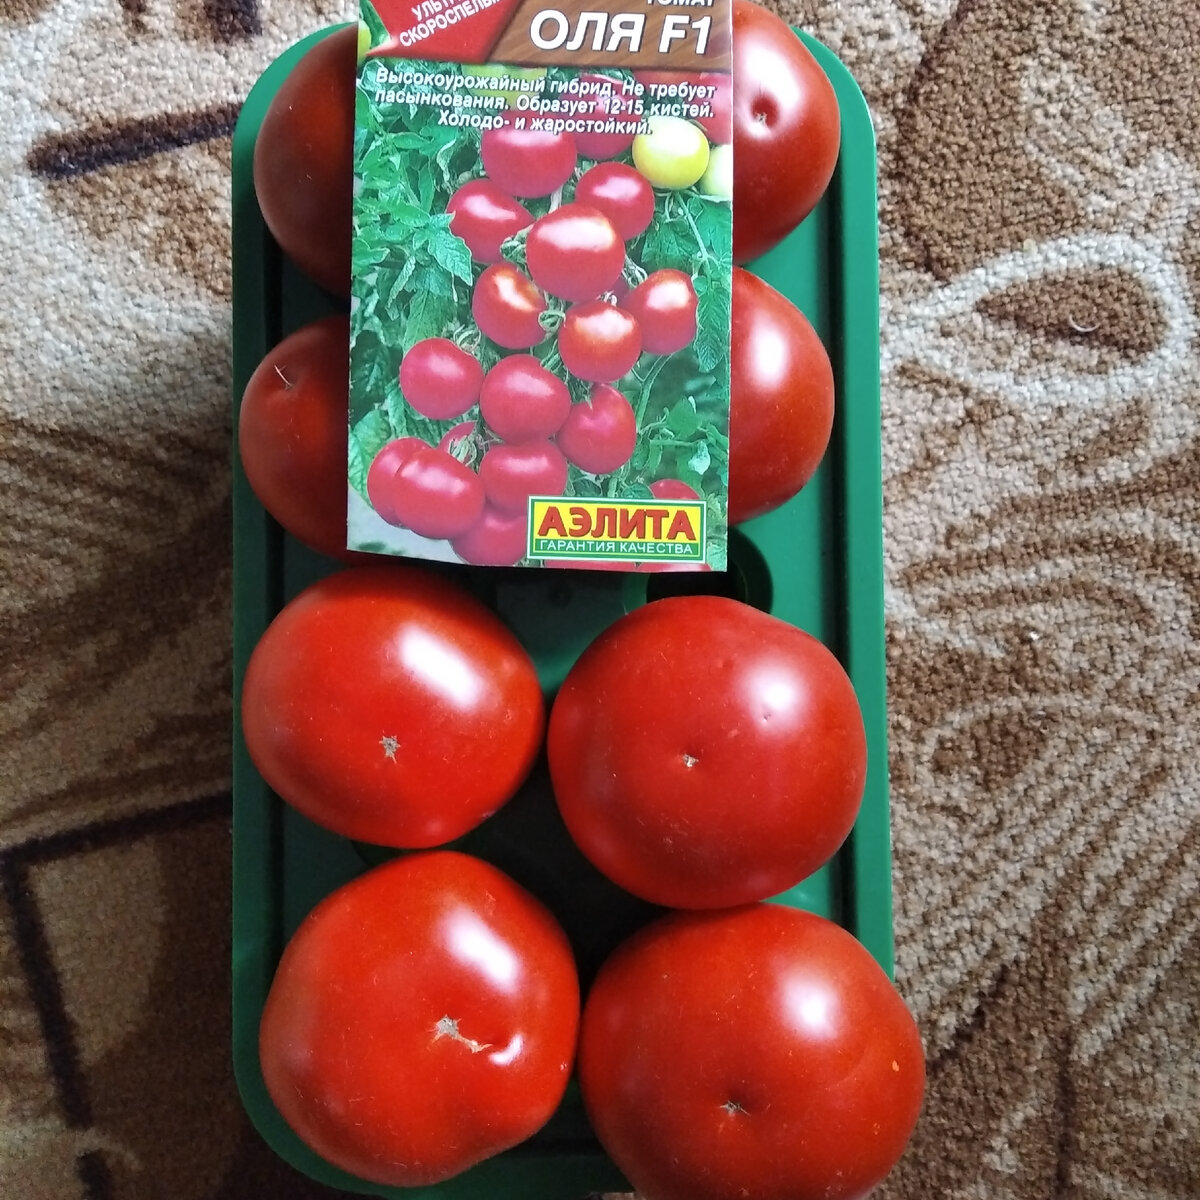 Сорт томатов оля f1. Томат Бриксол f1. Томат Оля f1. Томат Оля f1 отзывы.